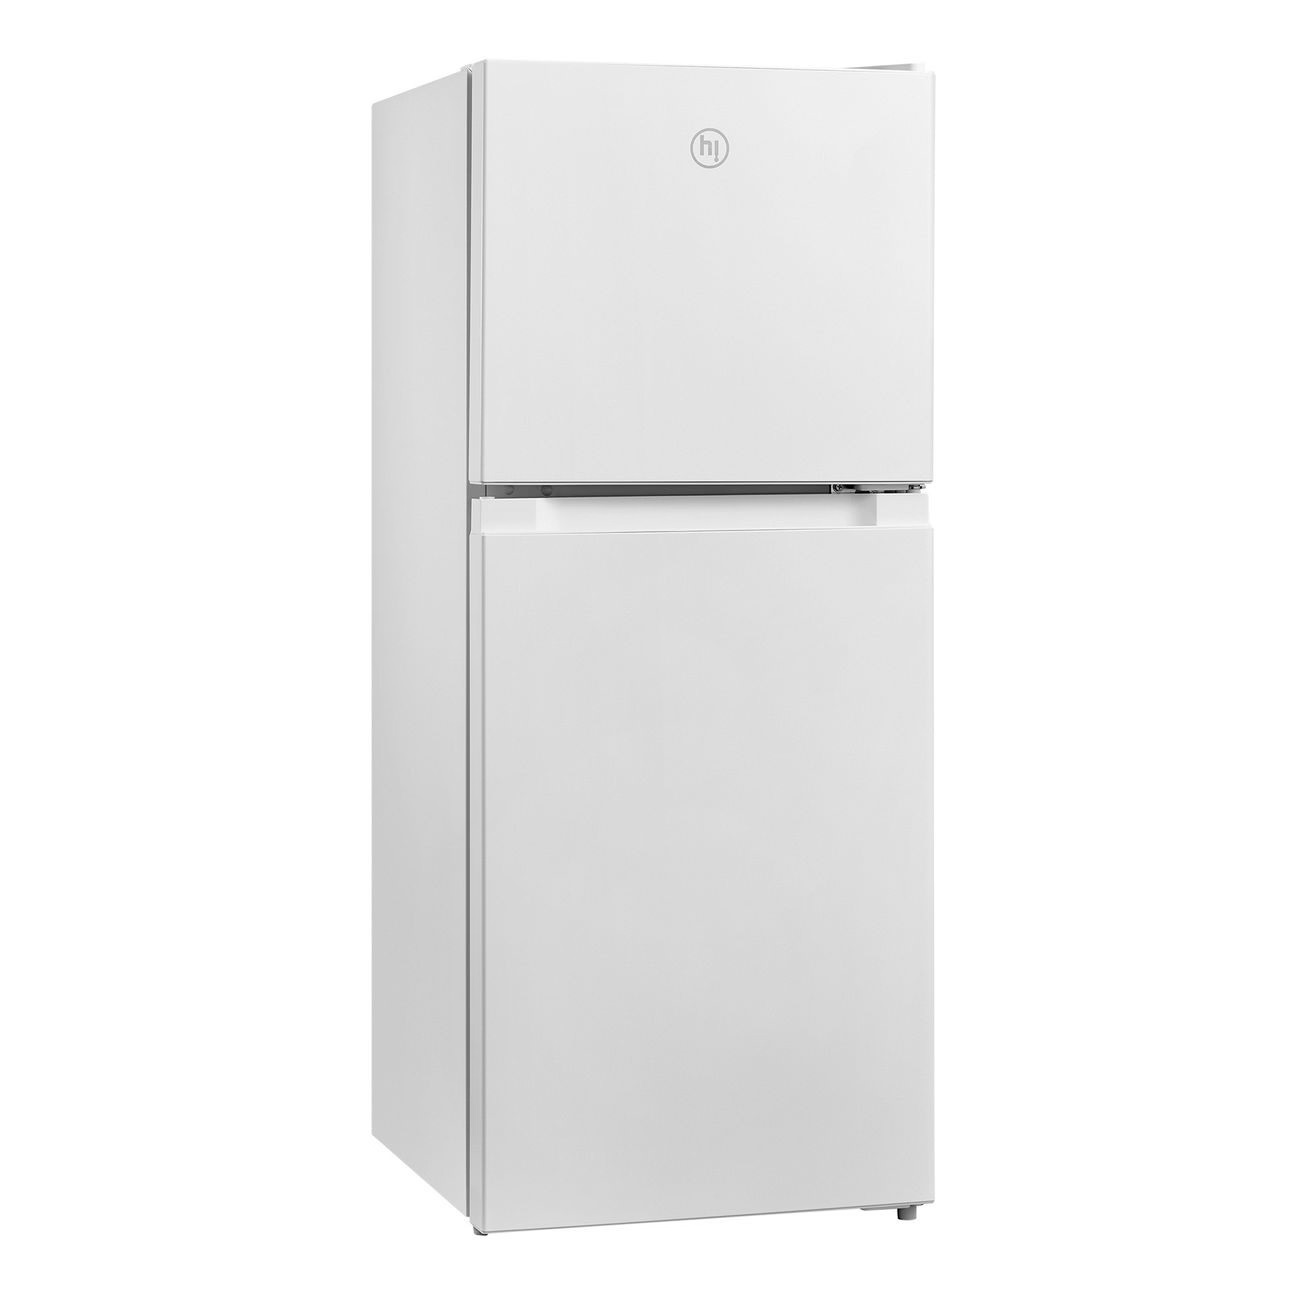 Холодильник Hi HTDN011950RW белый многокамерный холодильник haier htf 508dgs7ru